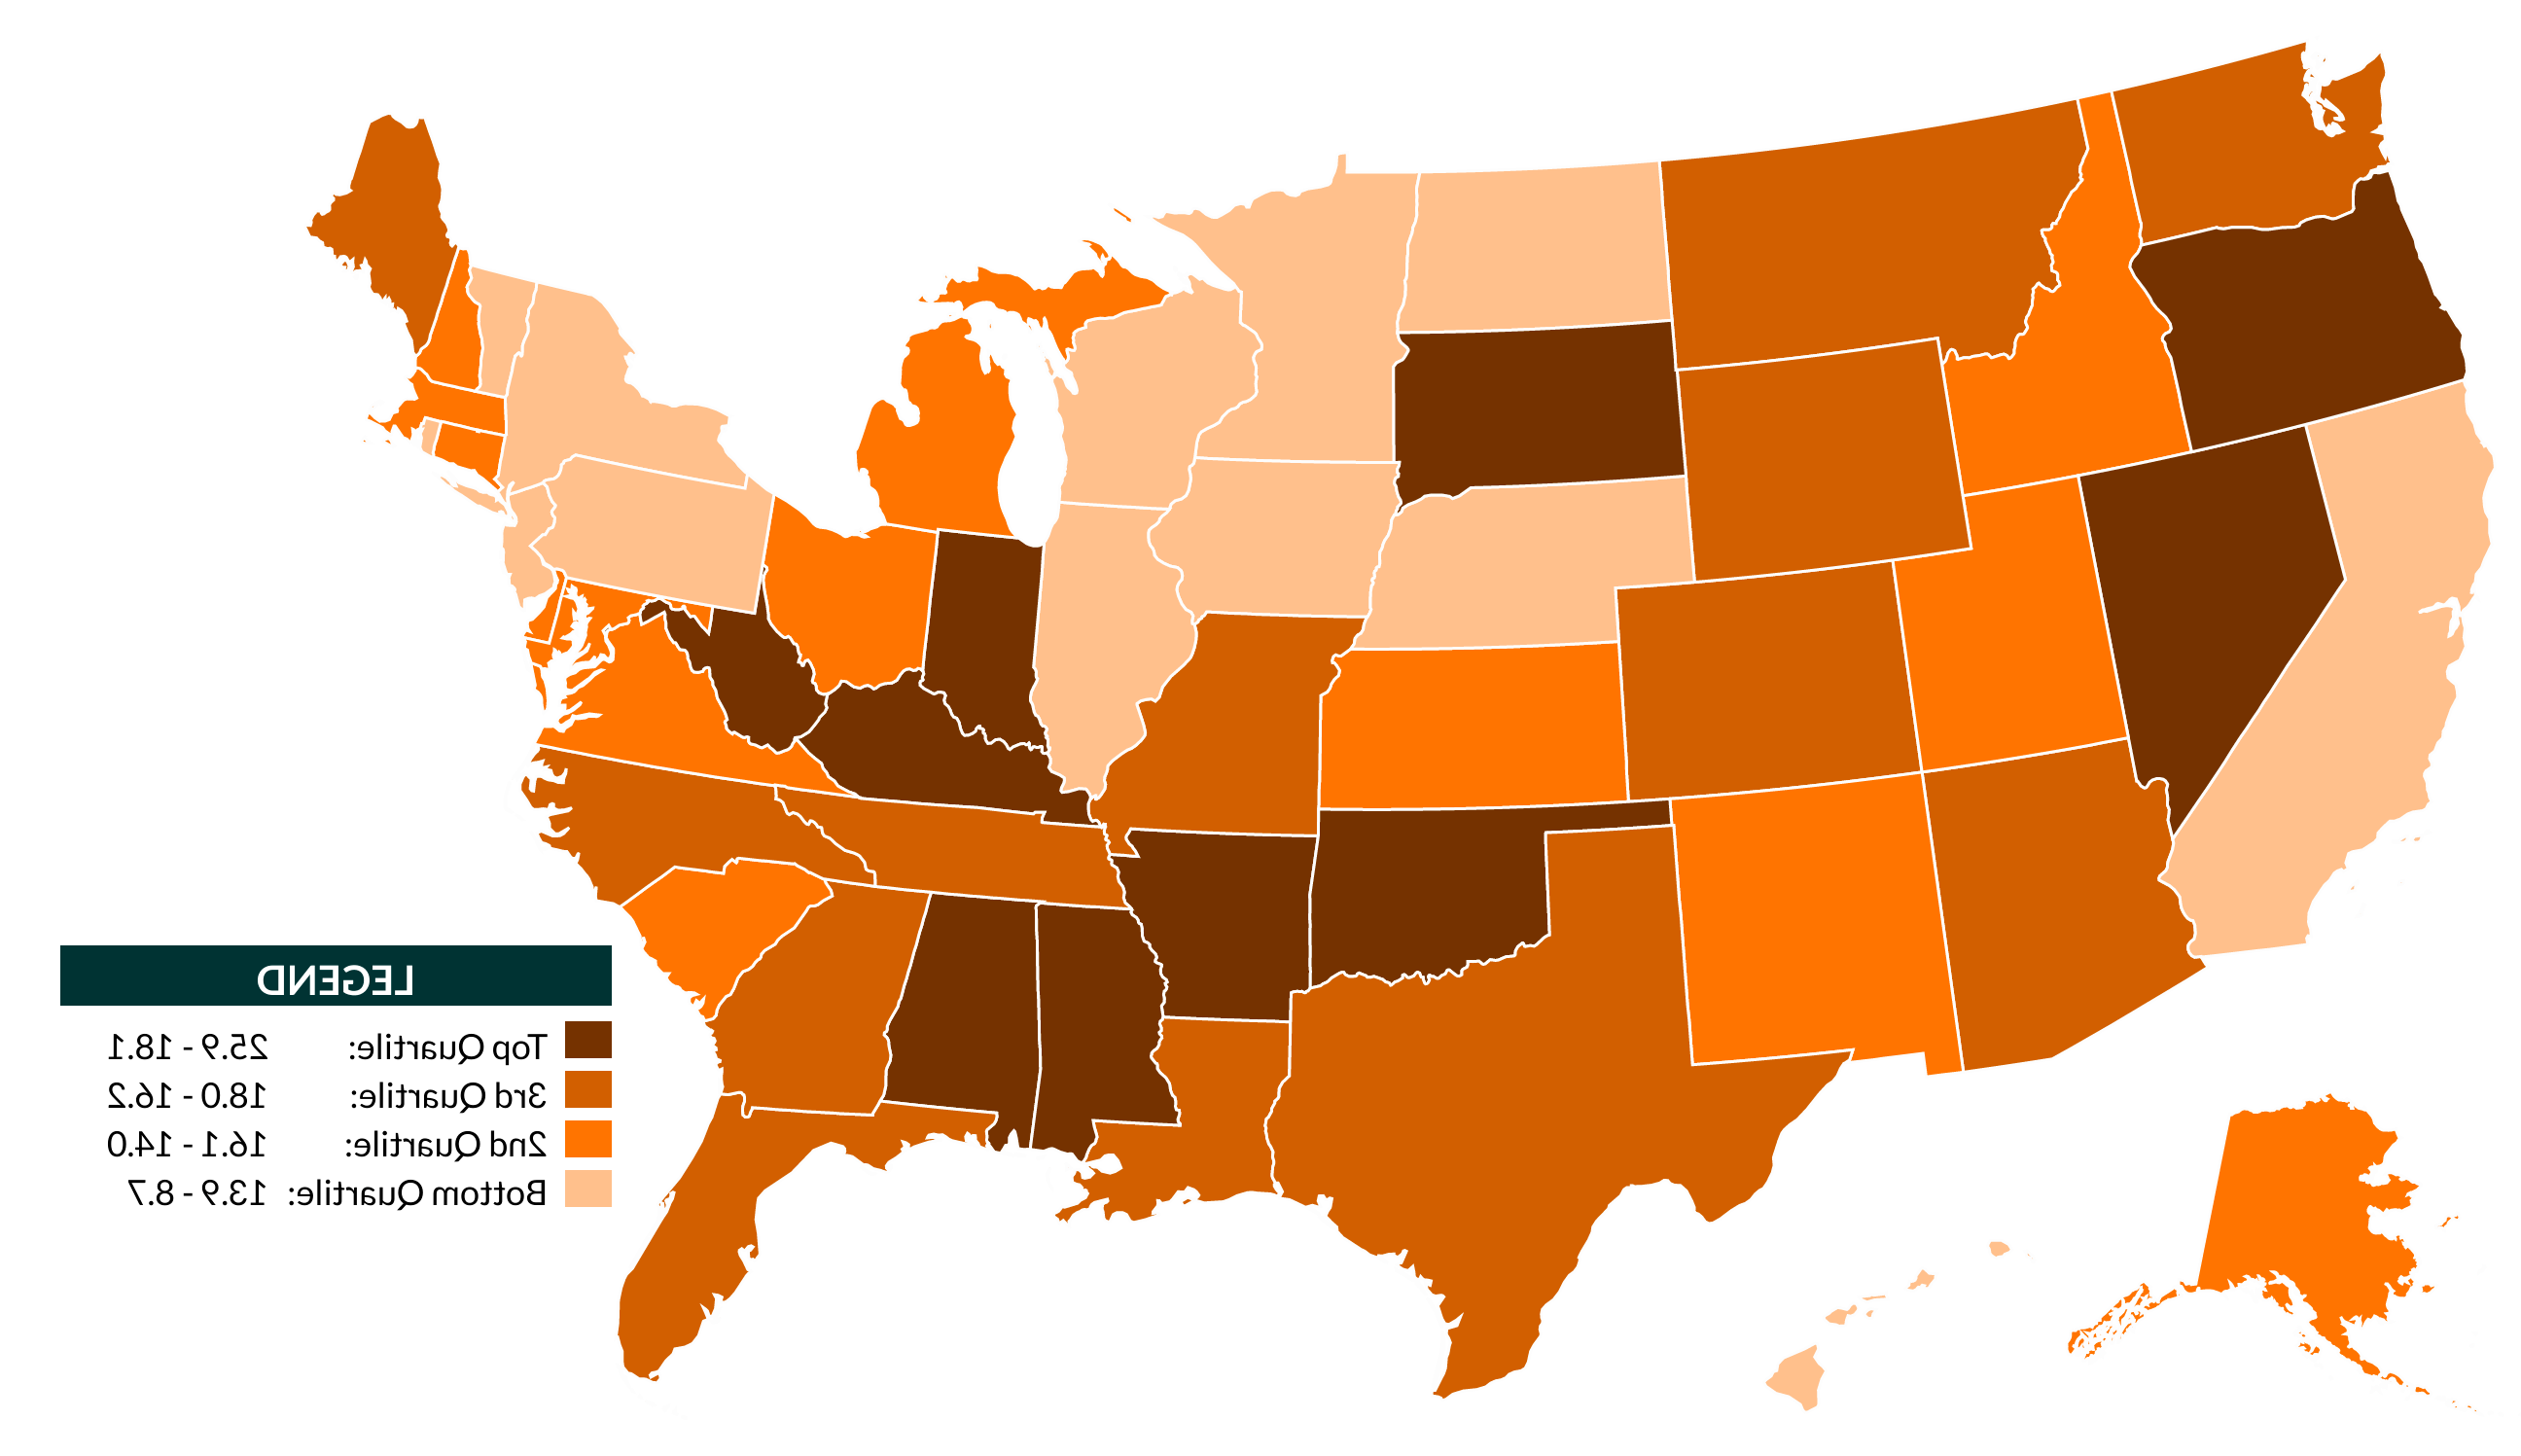 不同深浅的橙色显示美国图4. 美国各州女性调整后离婚率的地理差异，2018